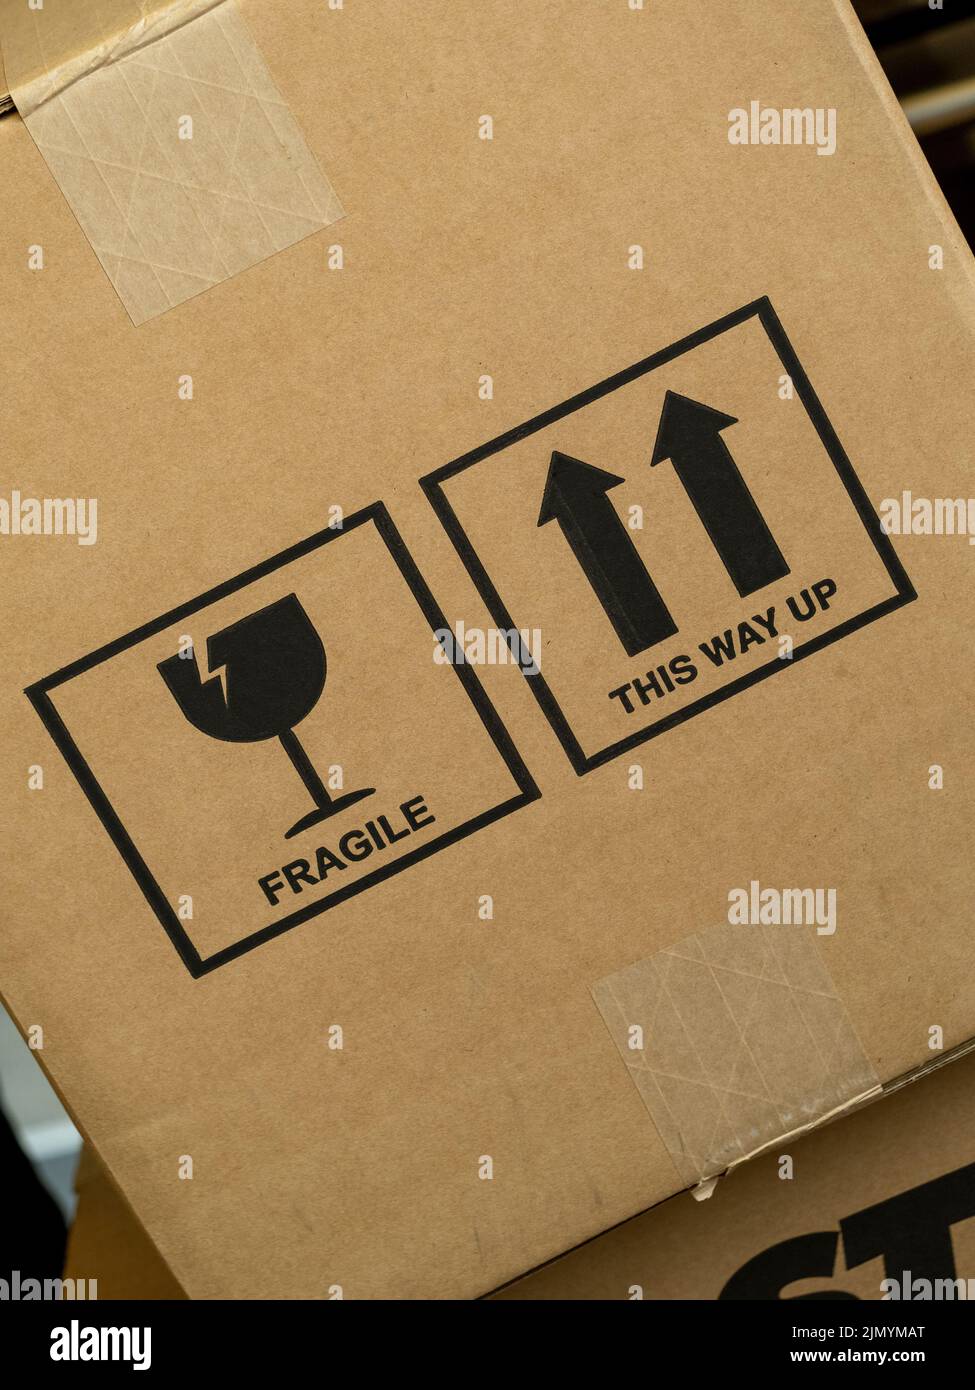 Caja de cartón angulada con las palabras Frágiles y This Way Up, junto con los símbolos gráficos de los iconos. Foto de stock